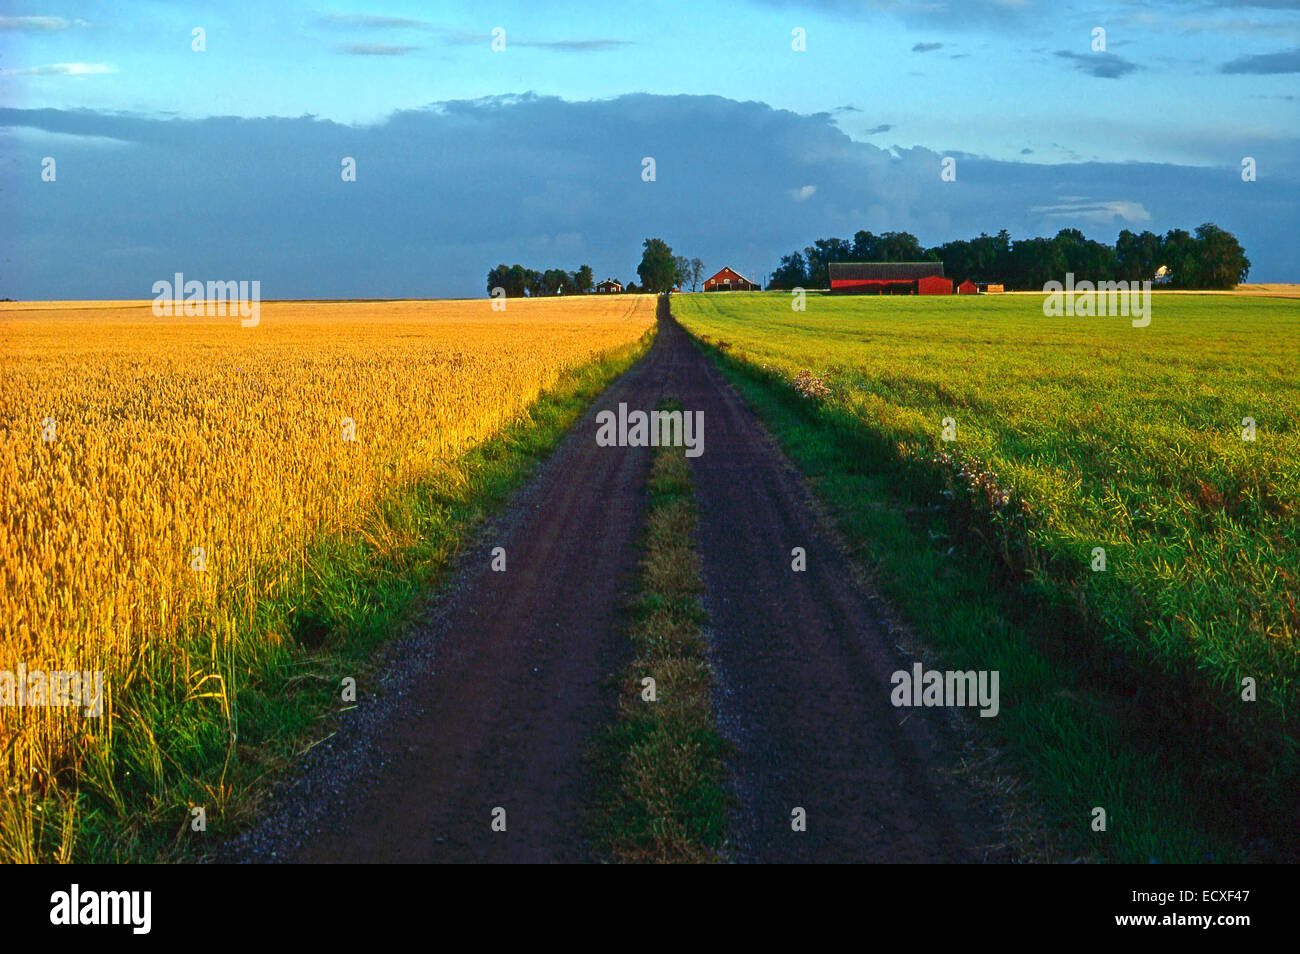 Dänische landwirtschaftliche Landschaft; Landstraße, die durch landwirtschaftliche Kulturen Weizen und Gras Weiden; Bauernhof Stockfoto